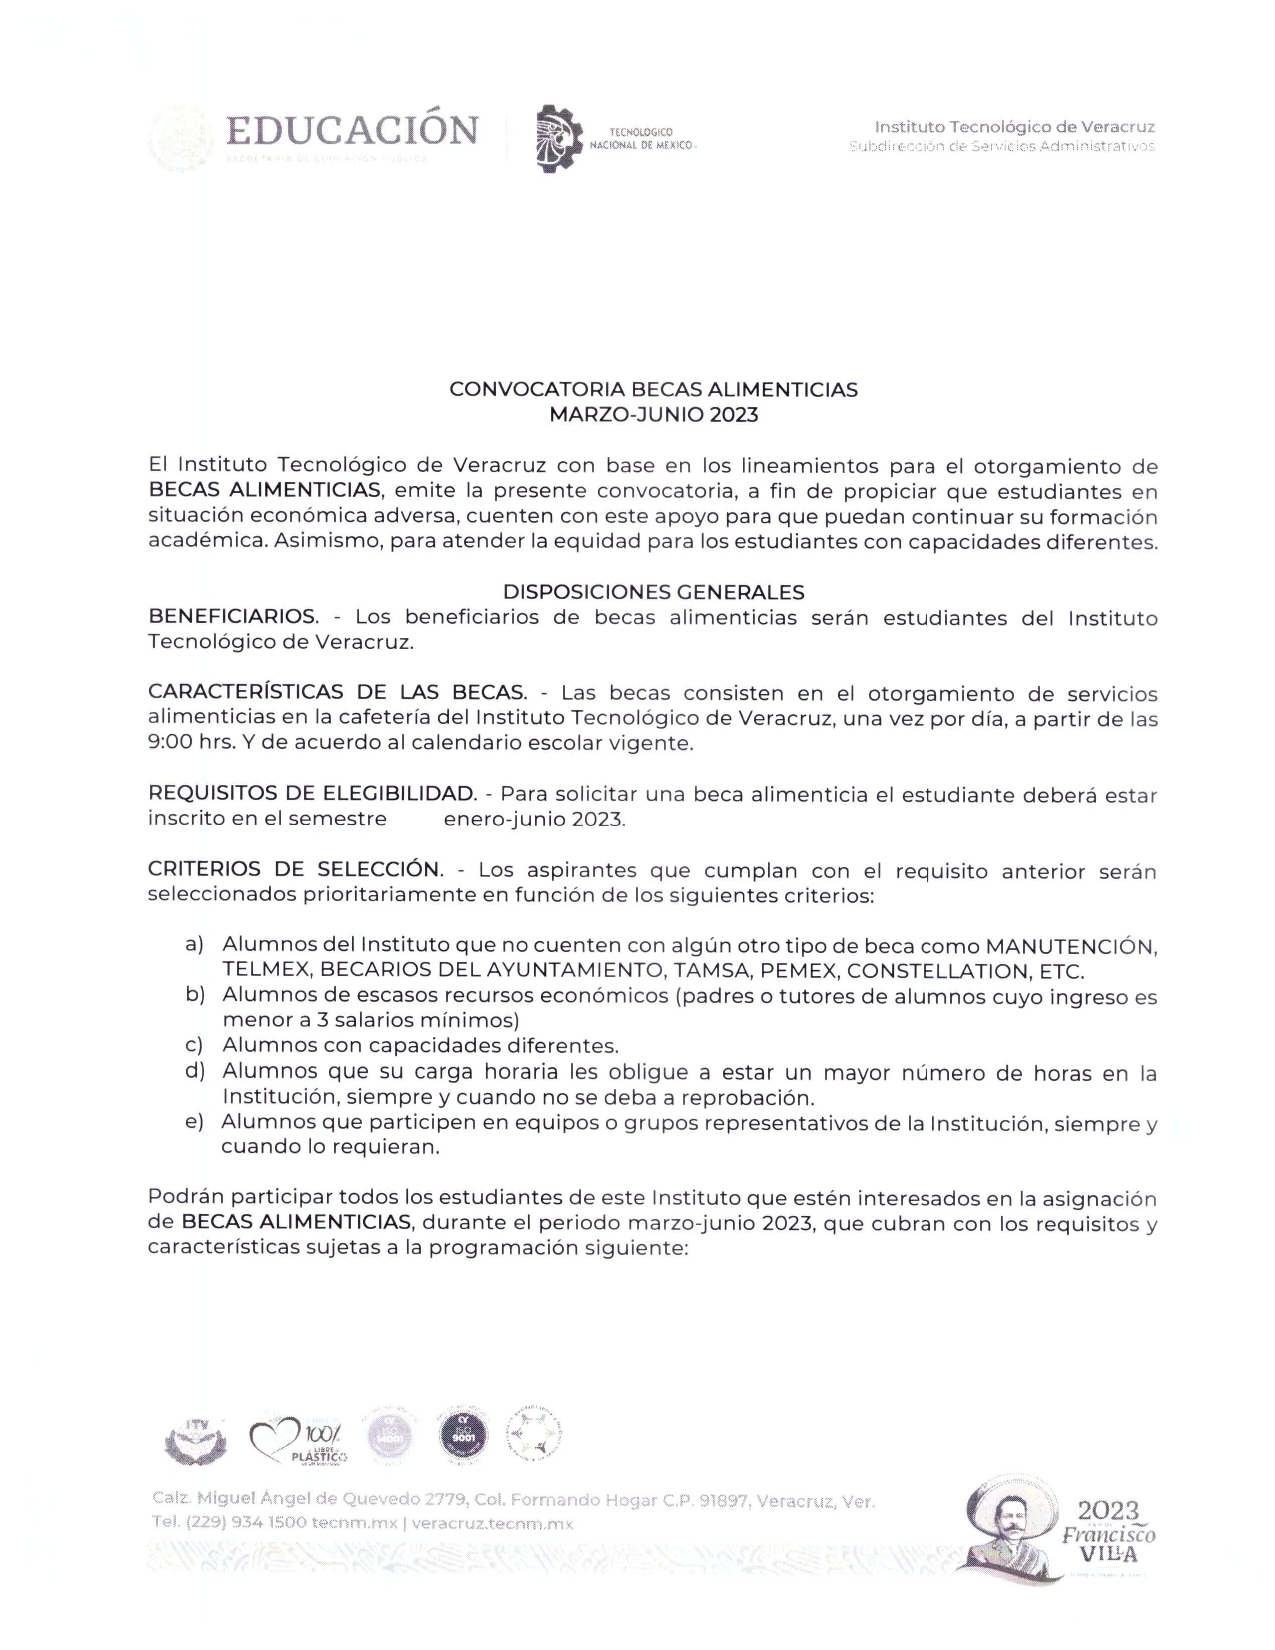 CONVOCATORIA_BECA-ALIMENTICIA_2023_page-0001.jpg